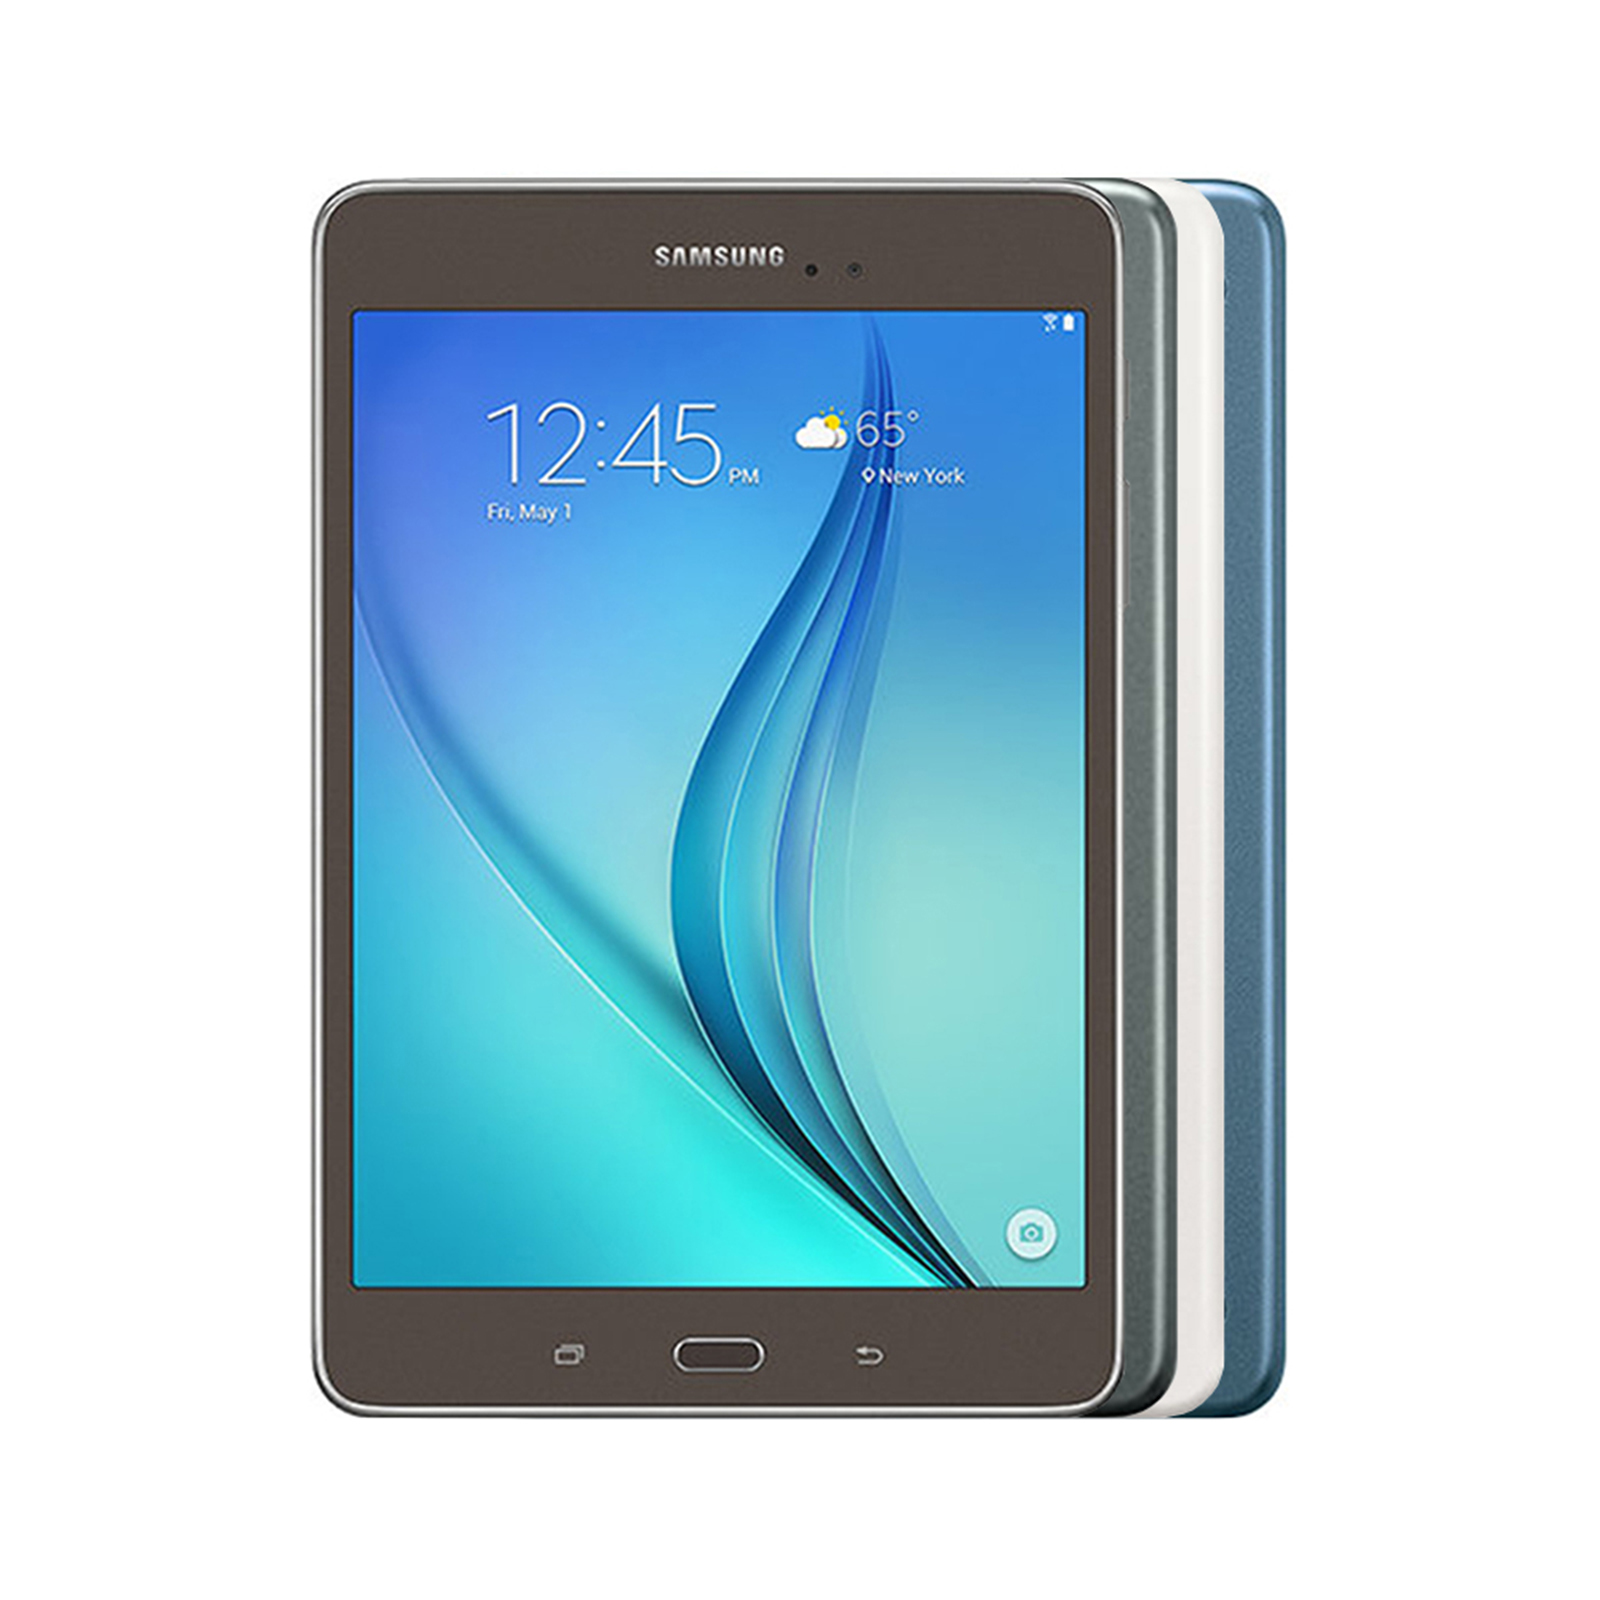 Samsung Galaxy Tab A 8.0 2017 T385 - Good Condition